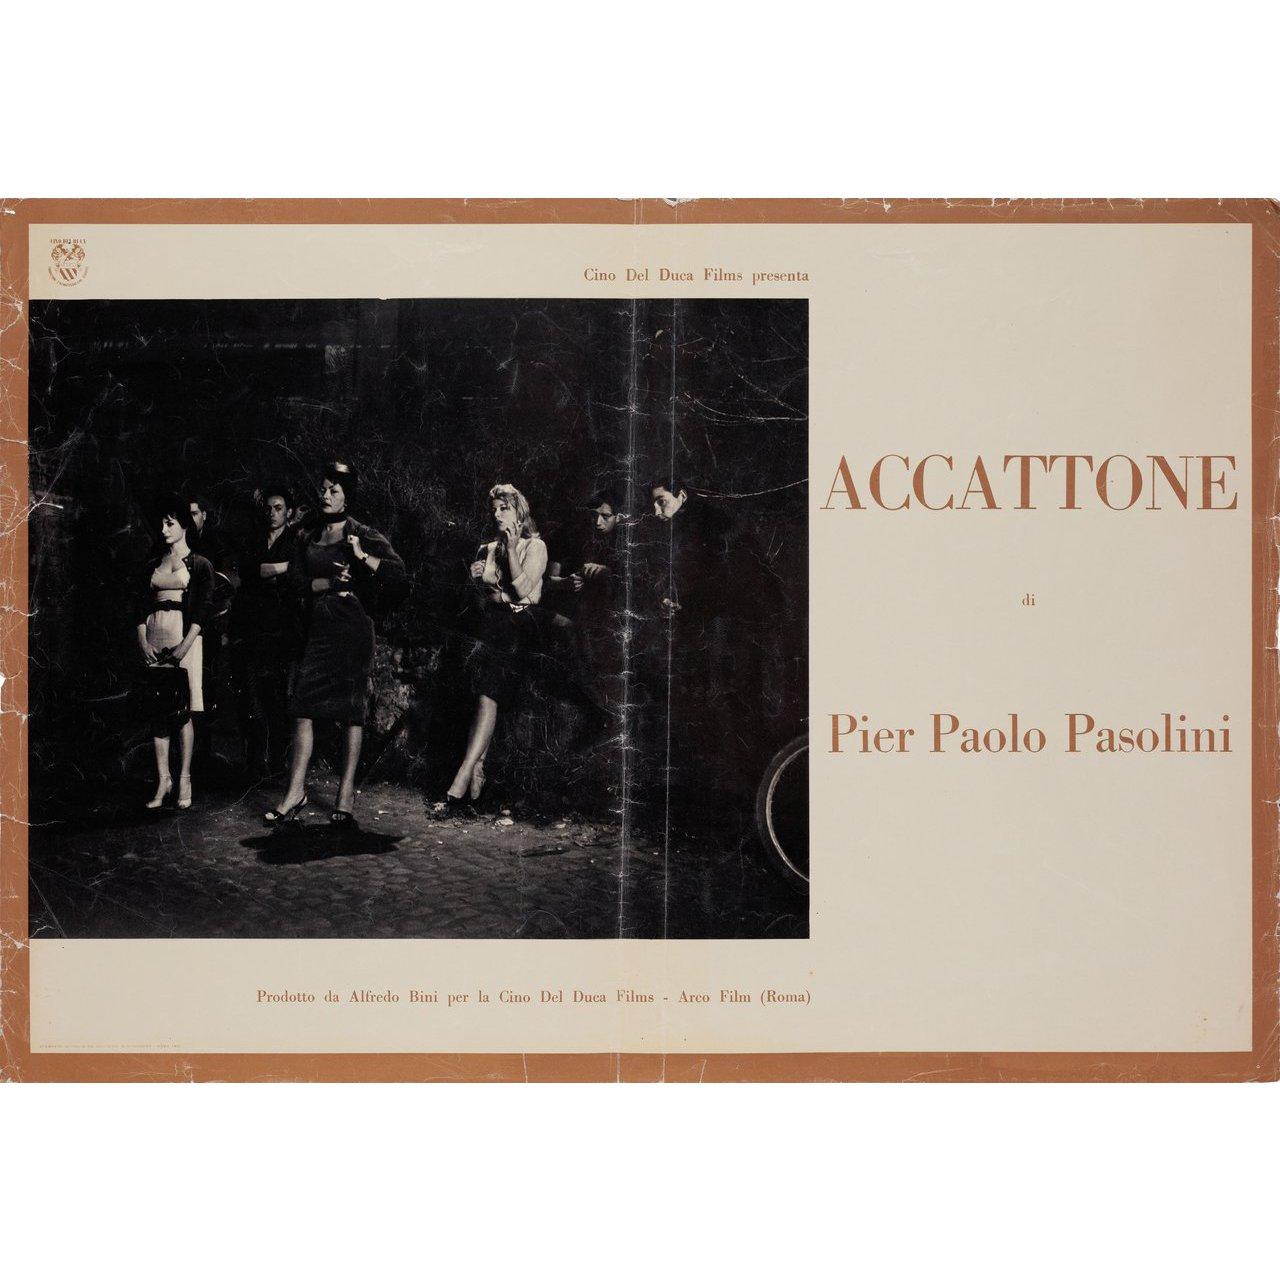 Originales italienisches Fotobusta-Plakat von 1961 für den Film Accattone unter der Regie von Pier Paolo Pasolini mit Franco Citti / Franca Pasut / Silvana Corsini / Paola Guidi. Gut-Sehr guter Zustand, gefaltet mit Rand- und Falzabnutzung. Viele